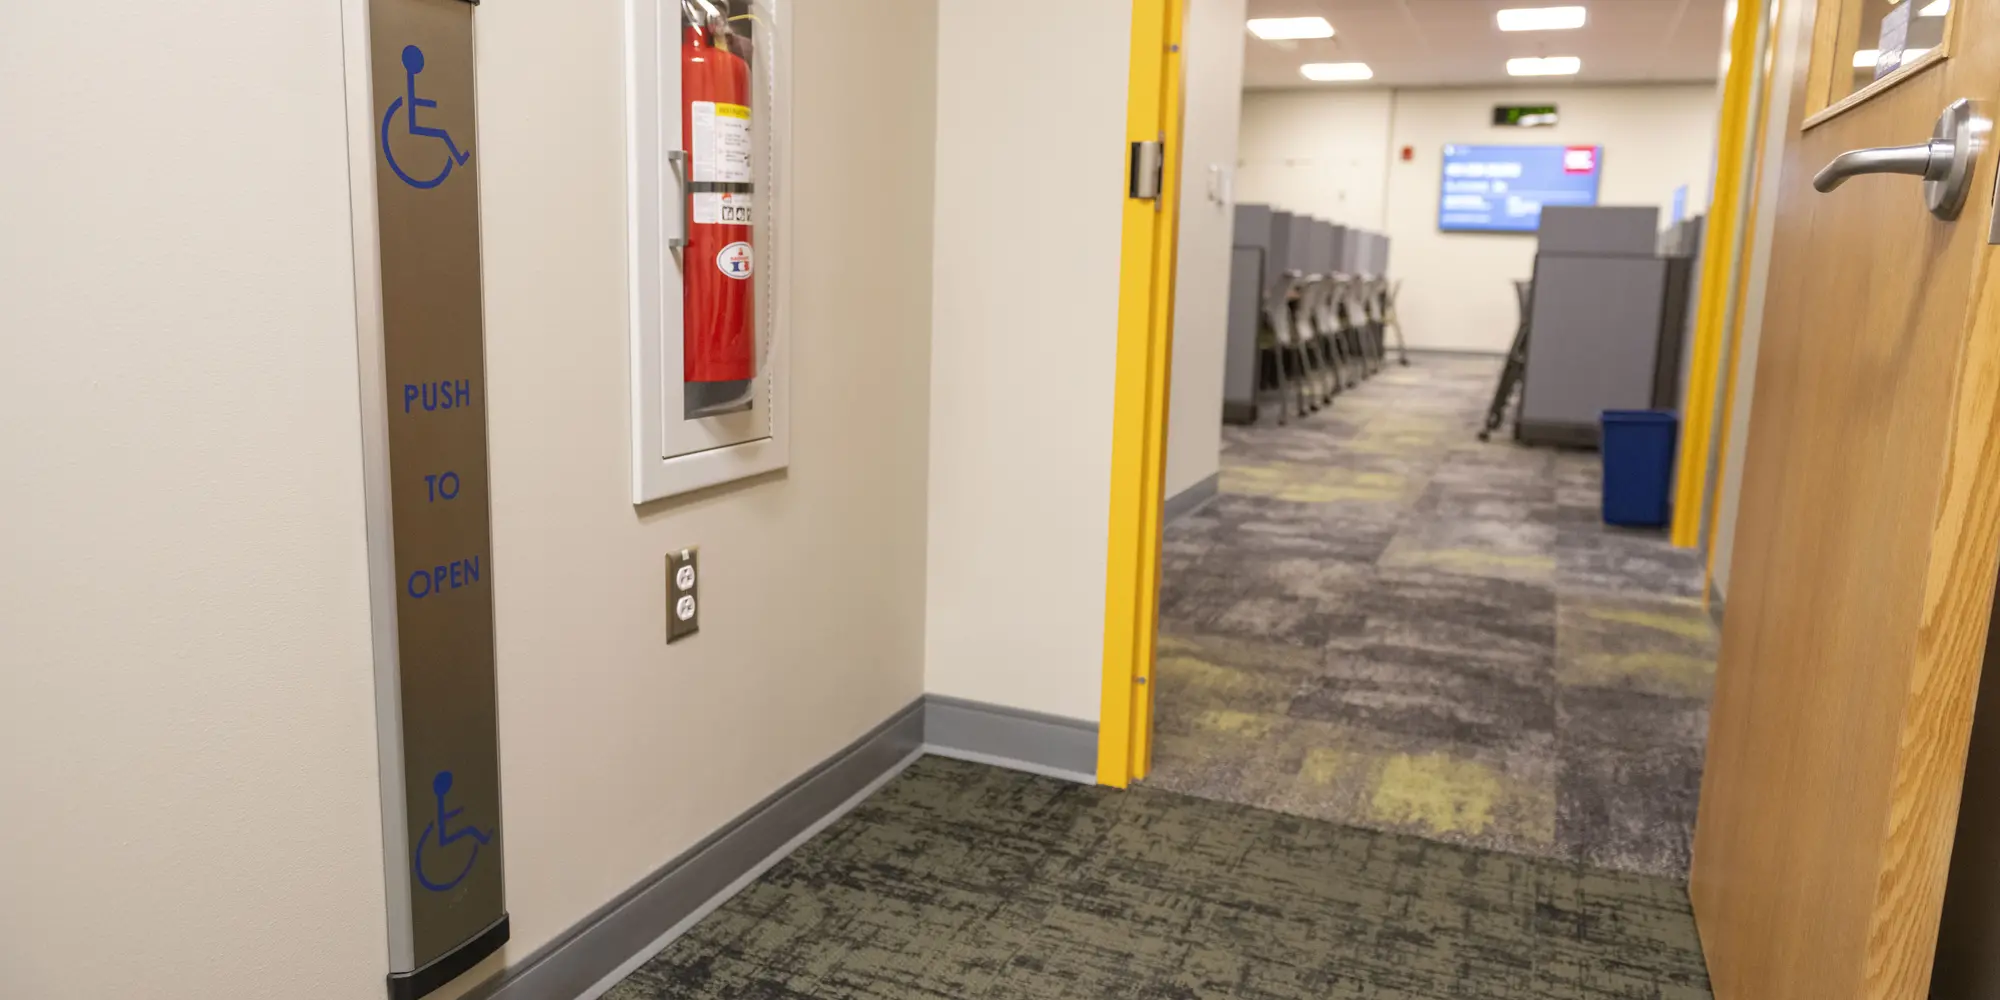 Open doorway into testing center showing automated door opener on left